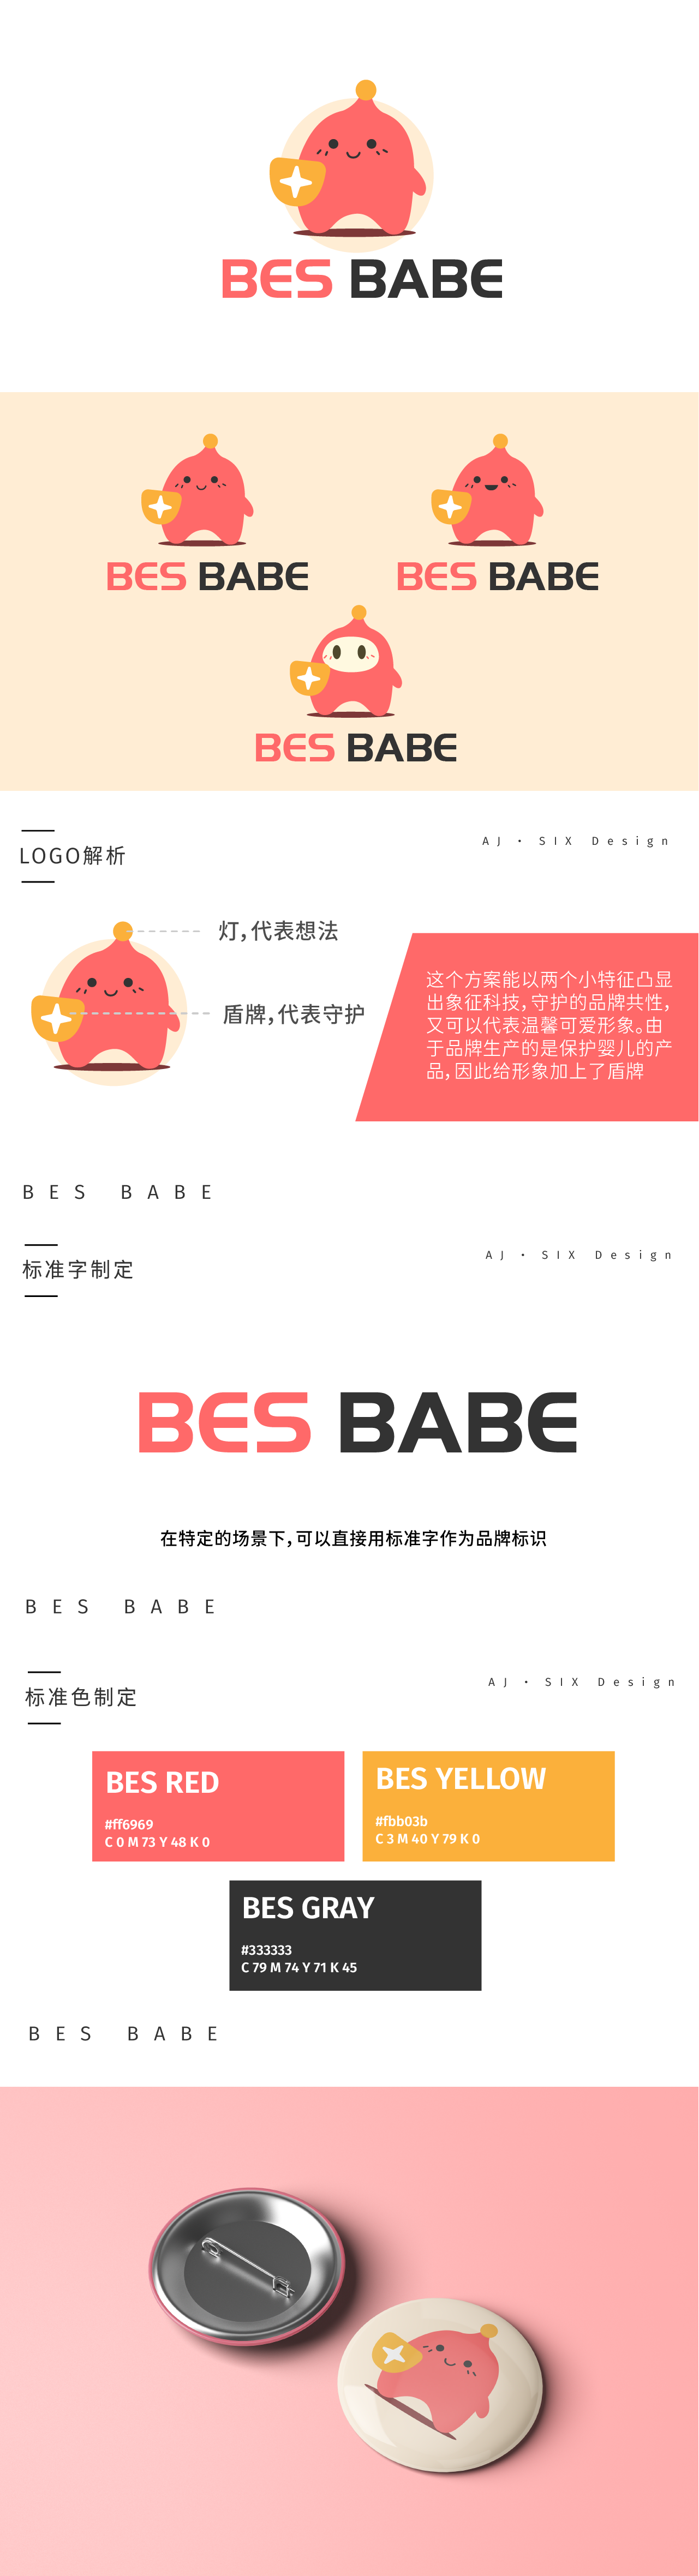 BES BABE婴儿科技品牌设计图1